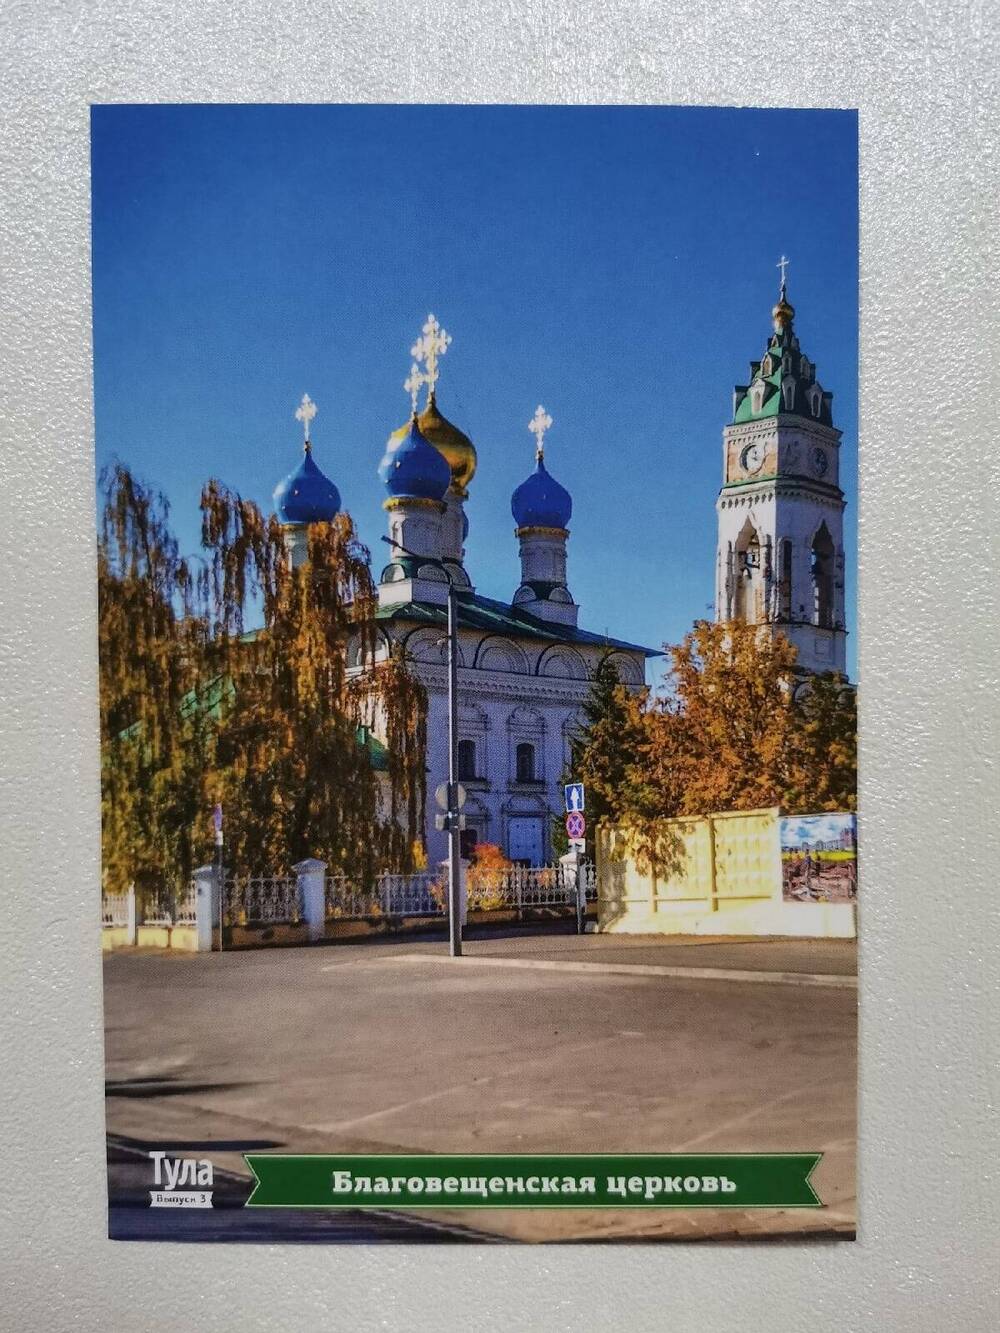 Открытка «Благовещенская церковь» из комплекта открыток «Тула. Виды города. Тульский Кремль».